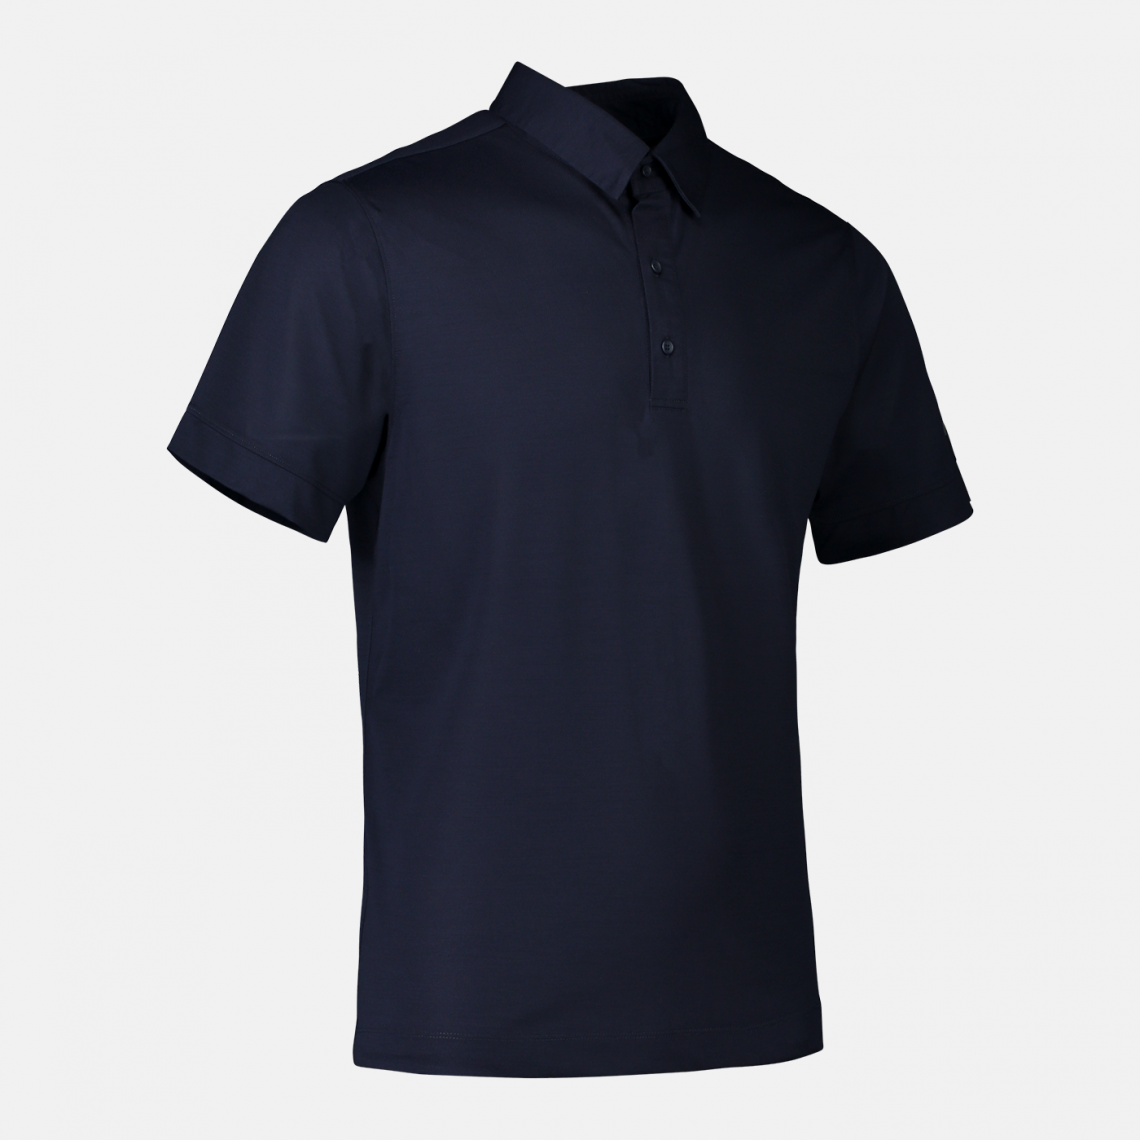 Polo shirt made of 100% bio-based polyamide fabric